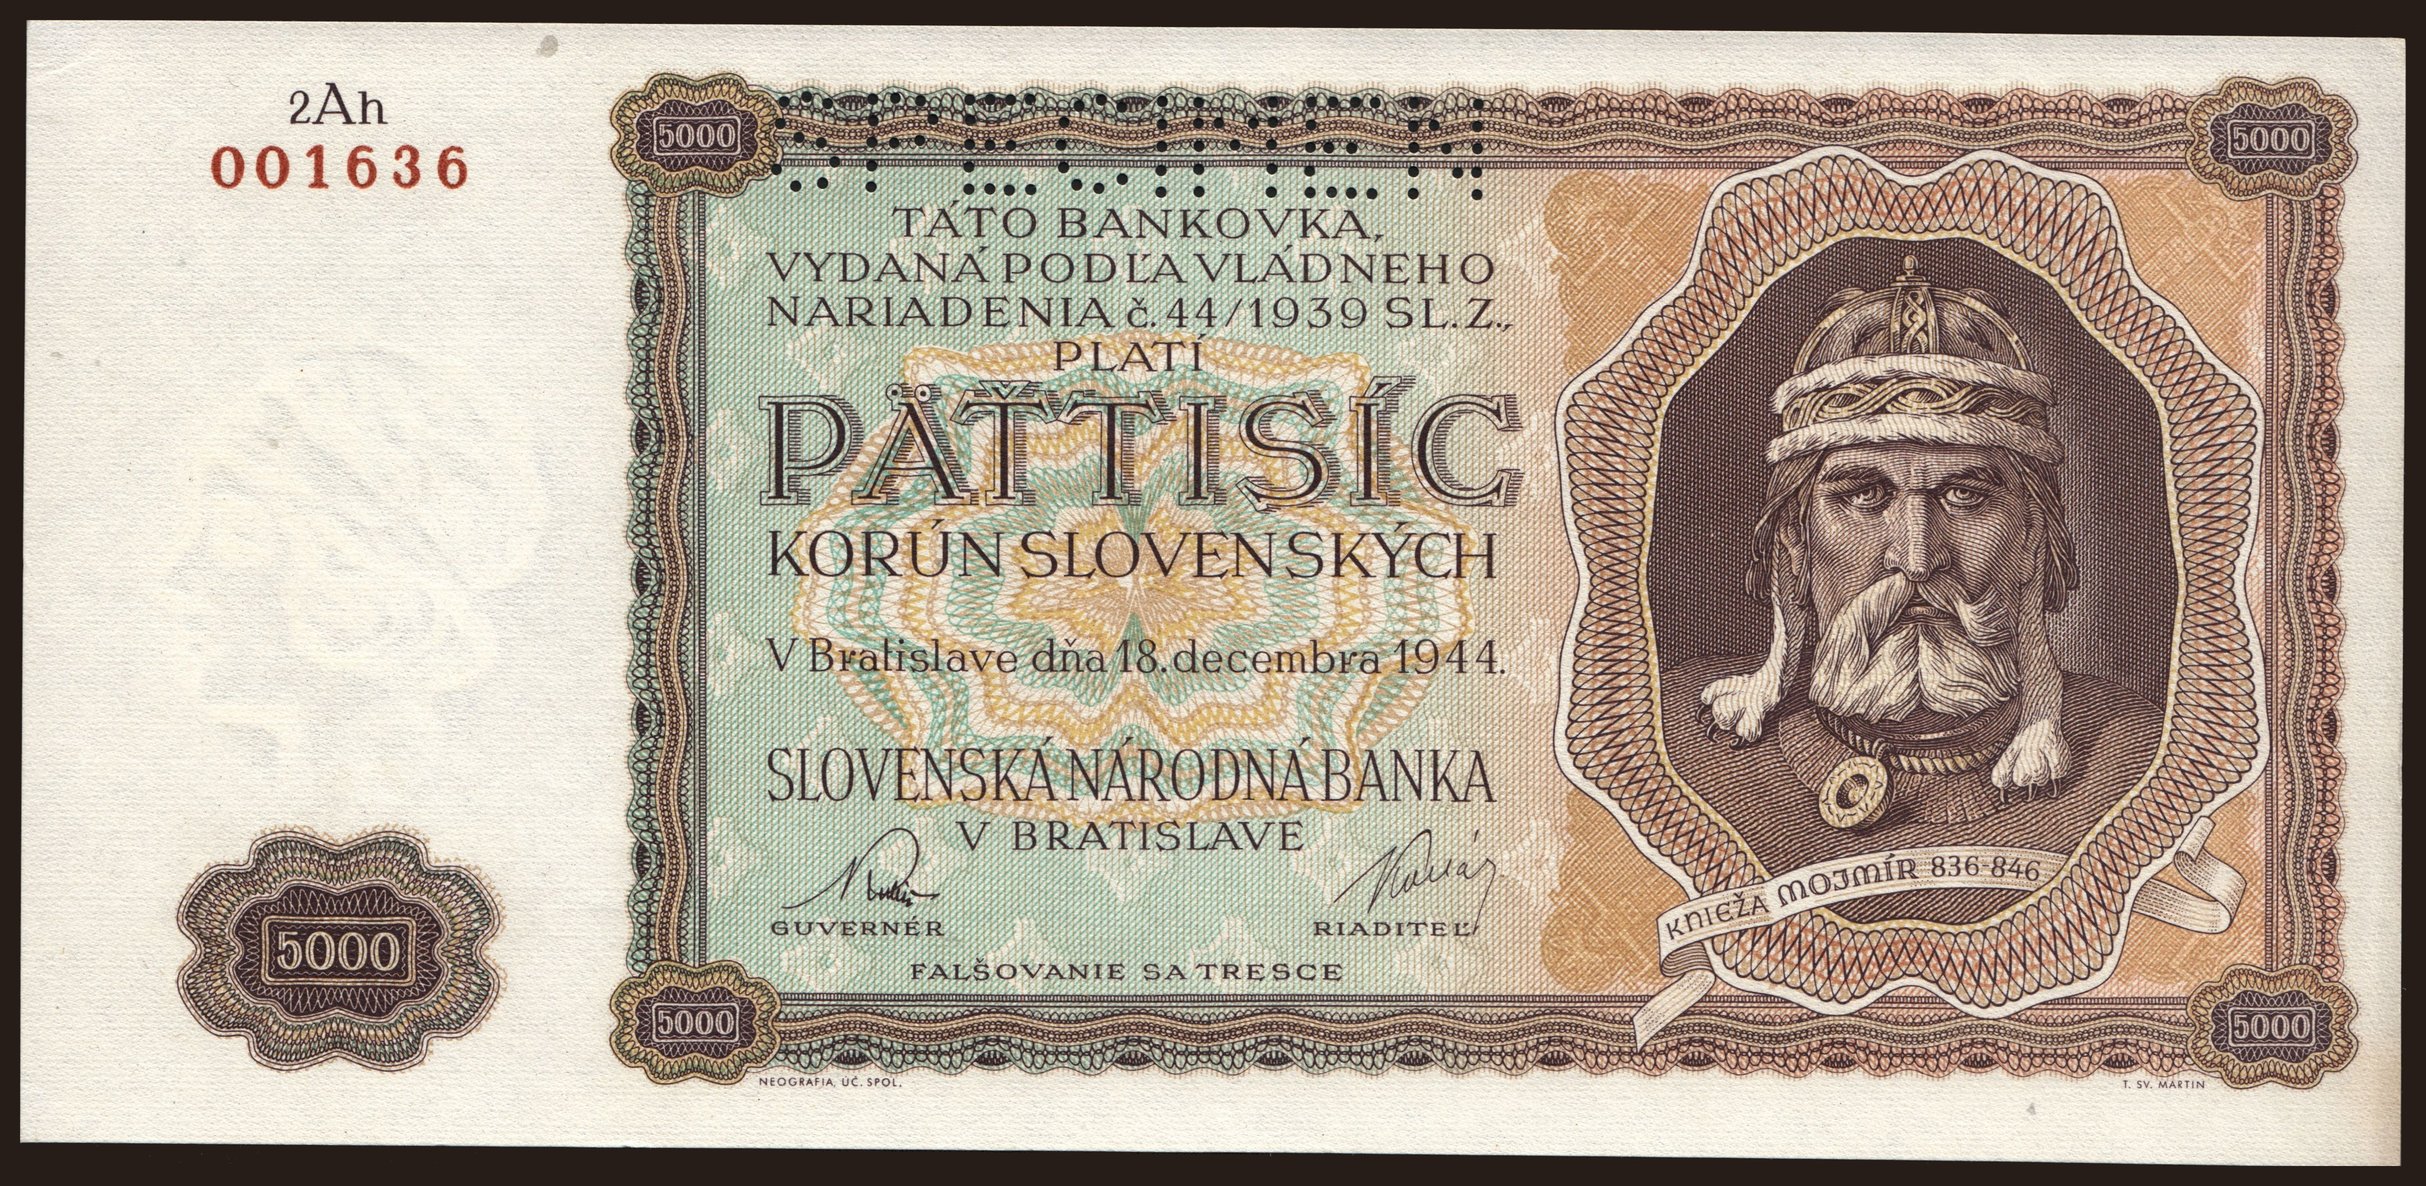 5000 Ks, 1944